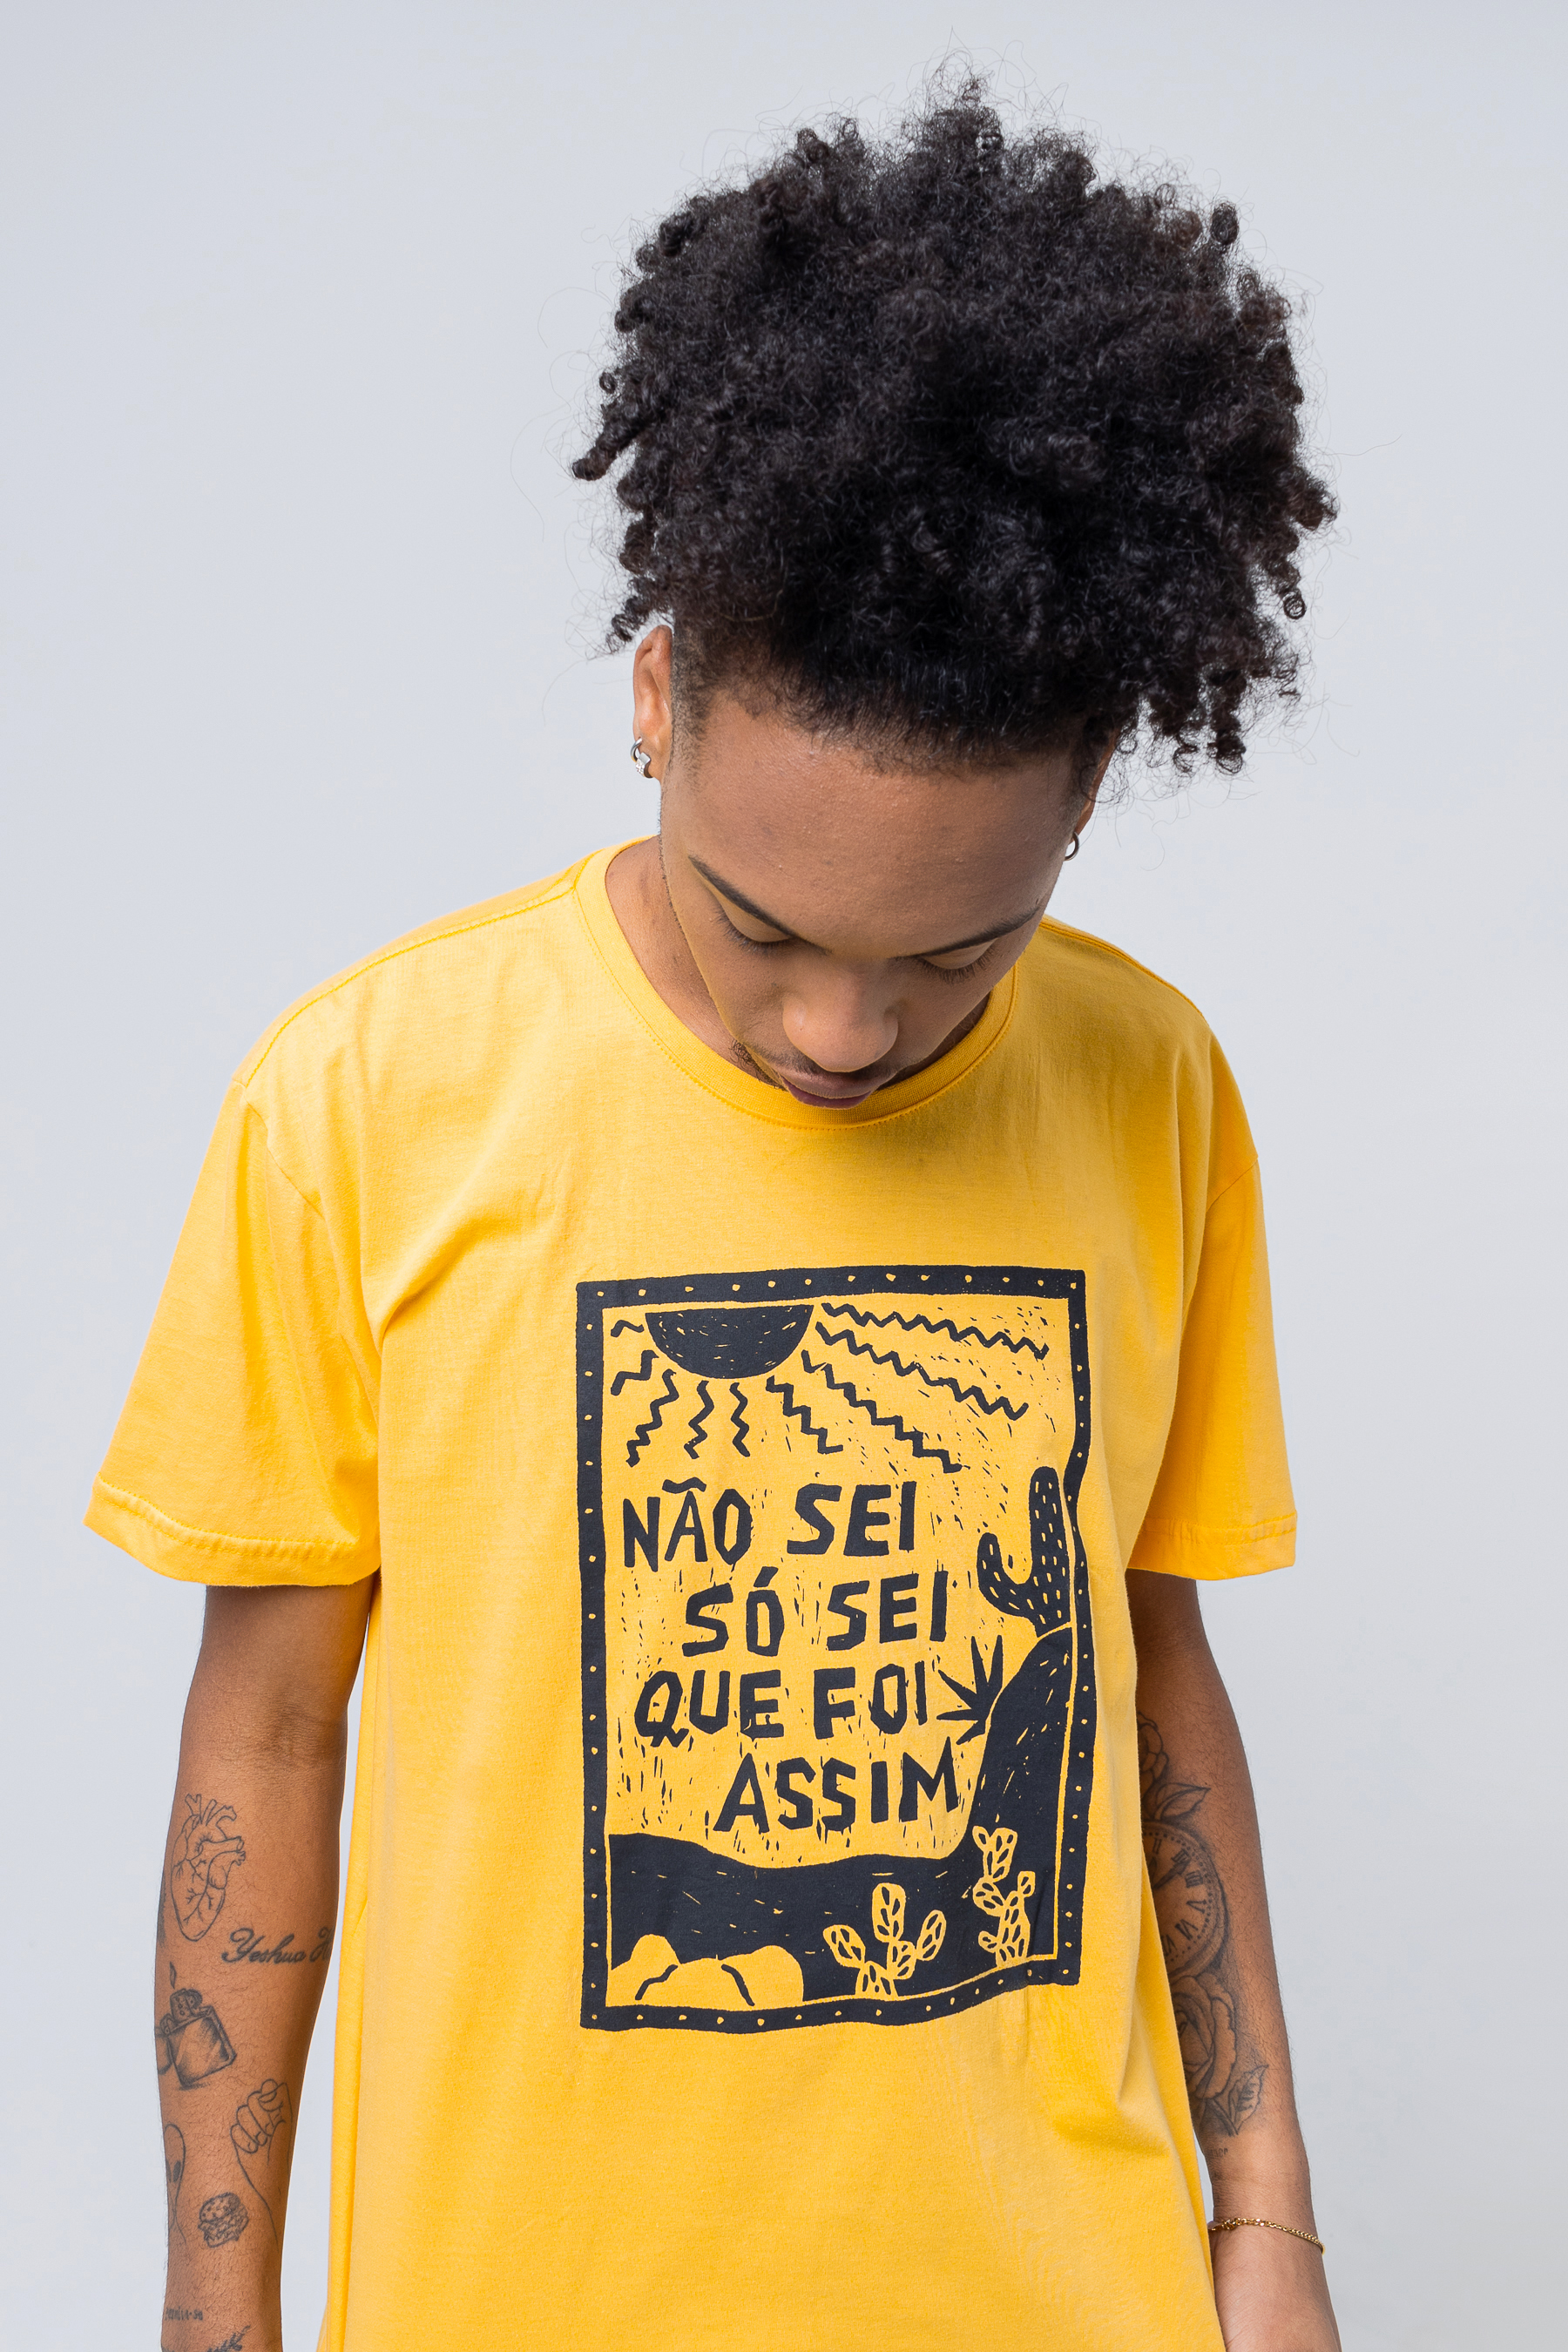 Promo relâmpago: camisetas da Chico Rei estão por R$ 49,90